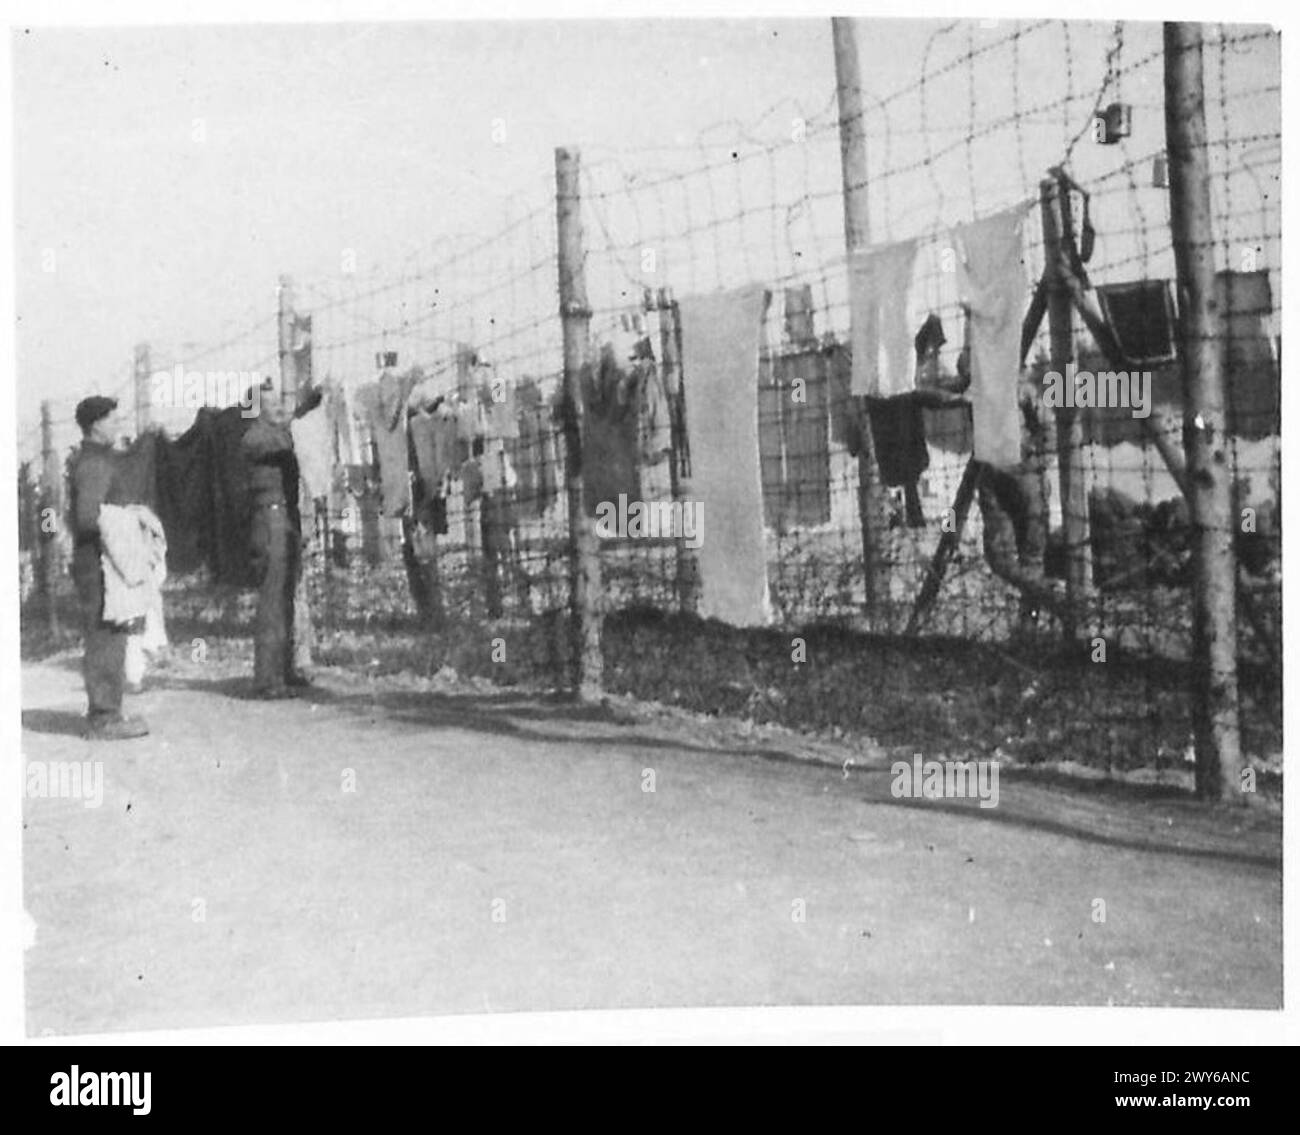 P.O.W. LIFE IN GERMANIA - giorno di lavaggio a Moosburg. Novembre 1943. , British Army, 21st Army Group Foto Stock